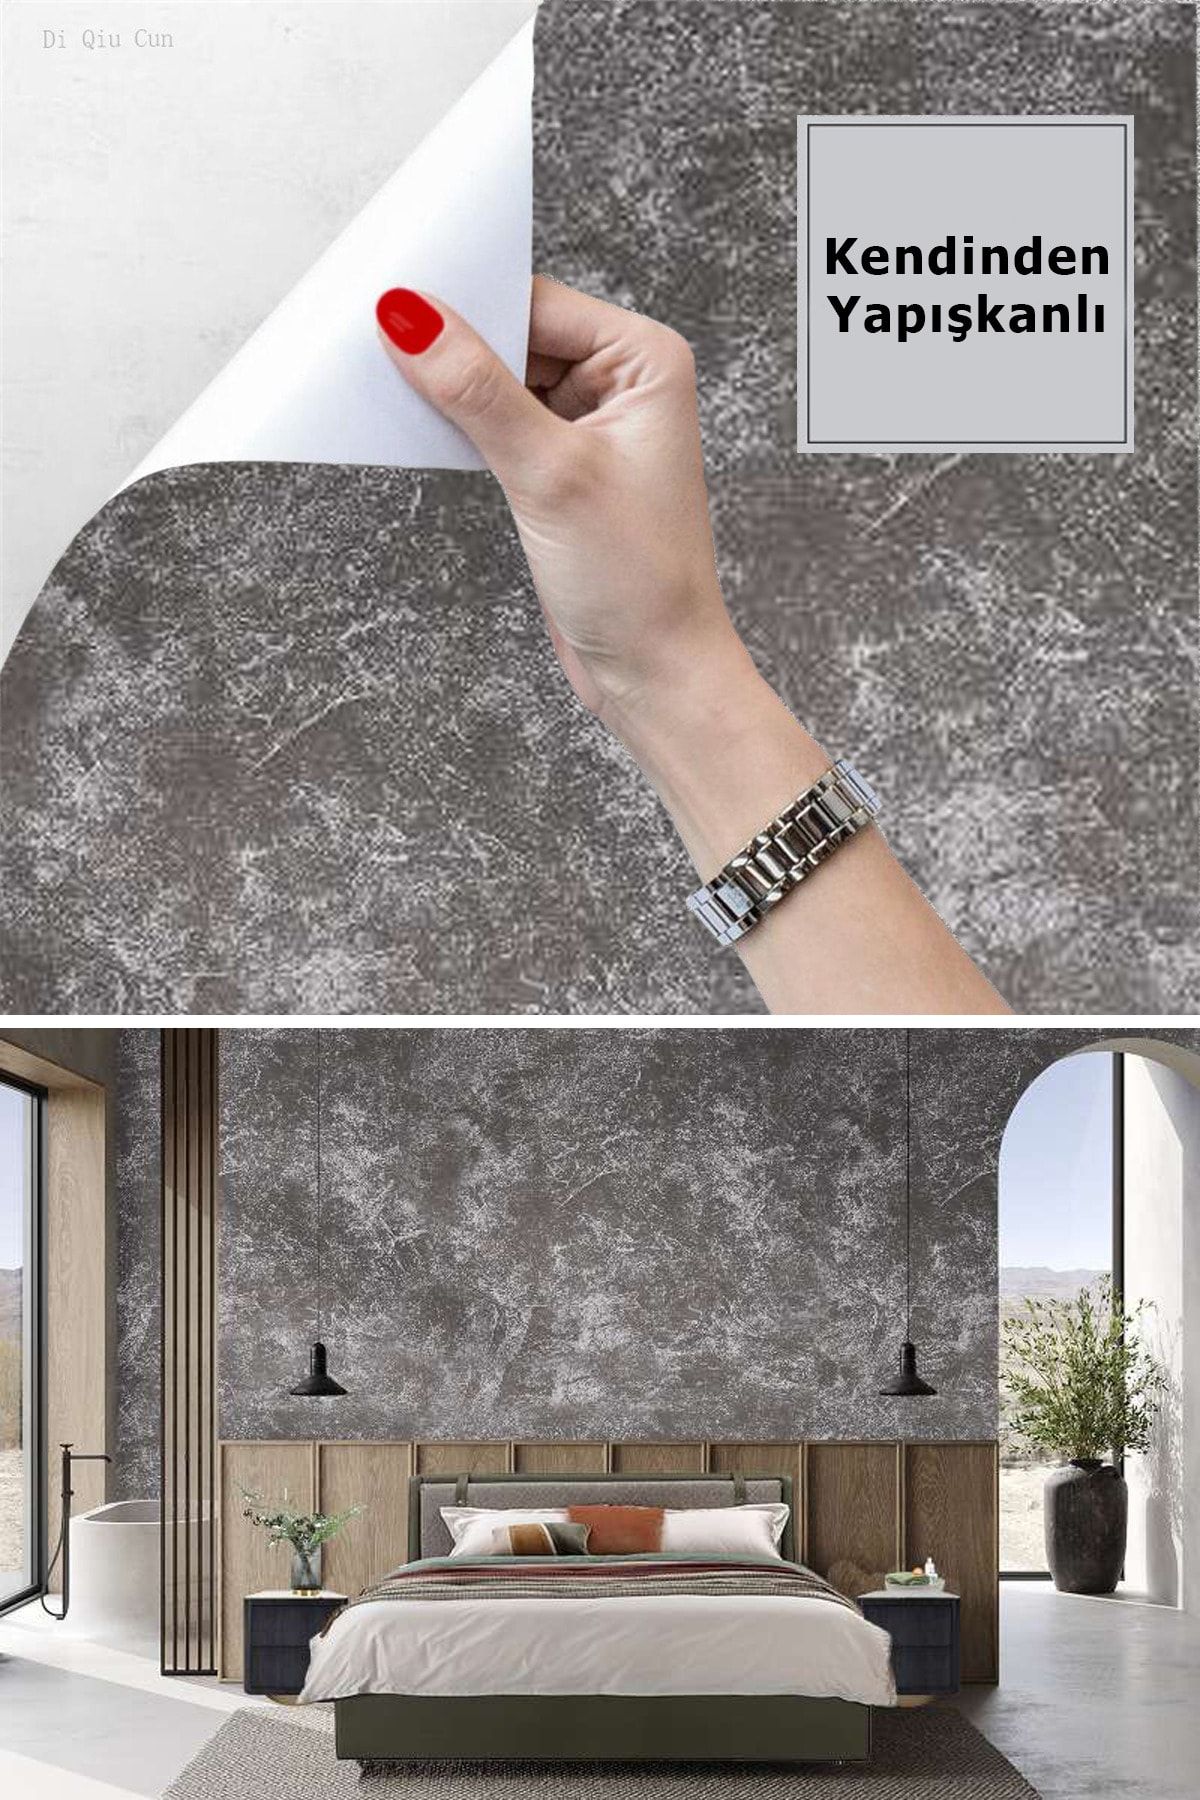 TechnoSmart 60x500cm Desenli Kendinden Yapışkanlı Duvar Kağıdı Mutfak Dolap Kaplama Dekorasyon